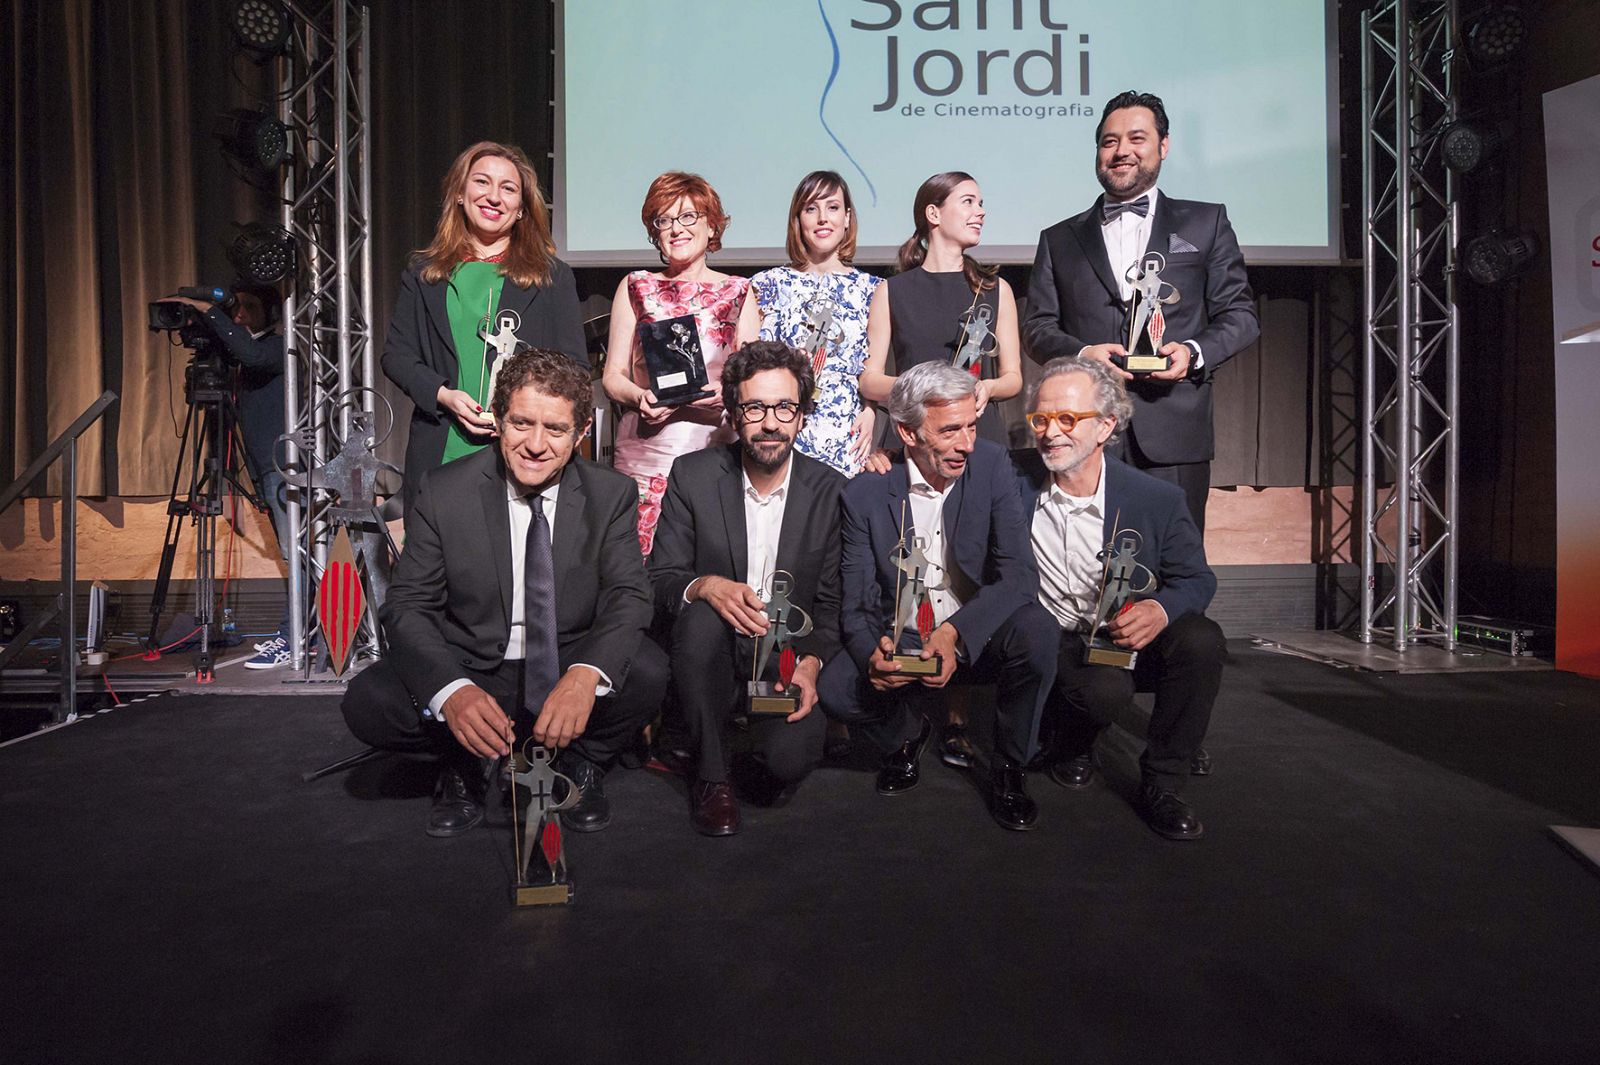 Los galardonados en la 60ª edición de los Premios Sant Jordi de Cinematografía